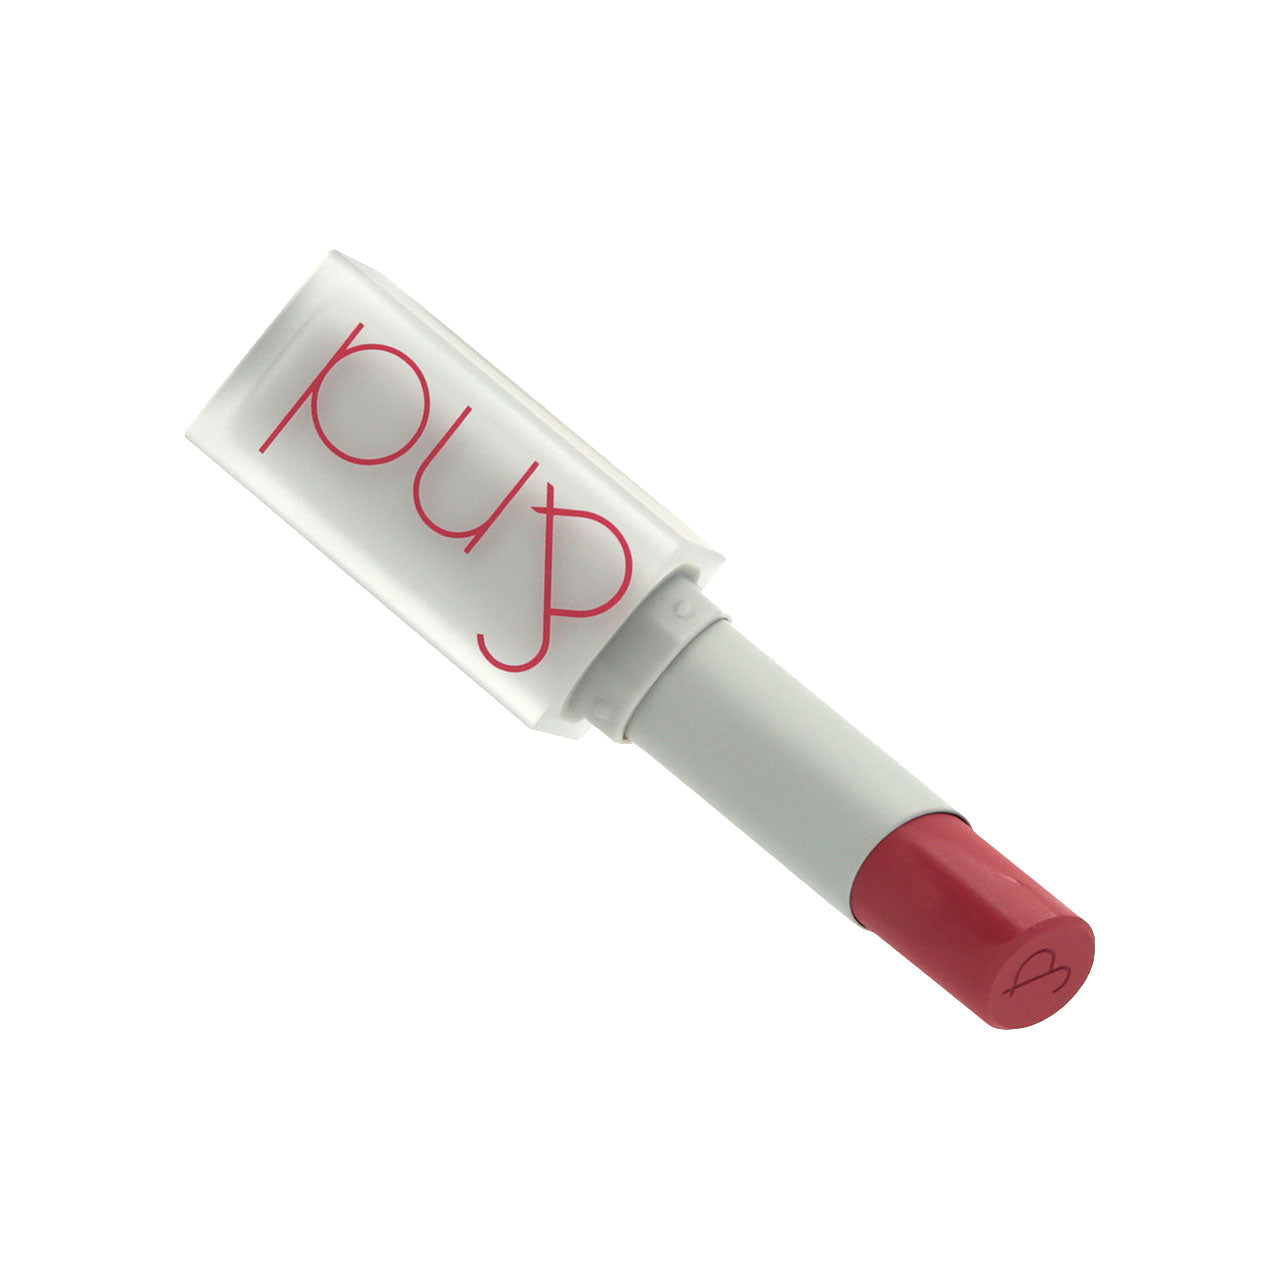 Rom&nd Zero Matte Lipstick #01 Dusty Pink 3g